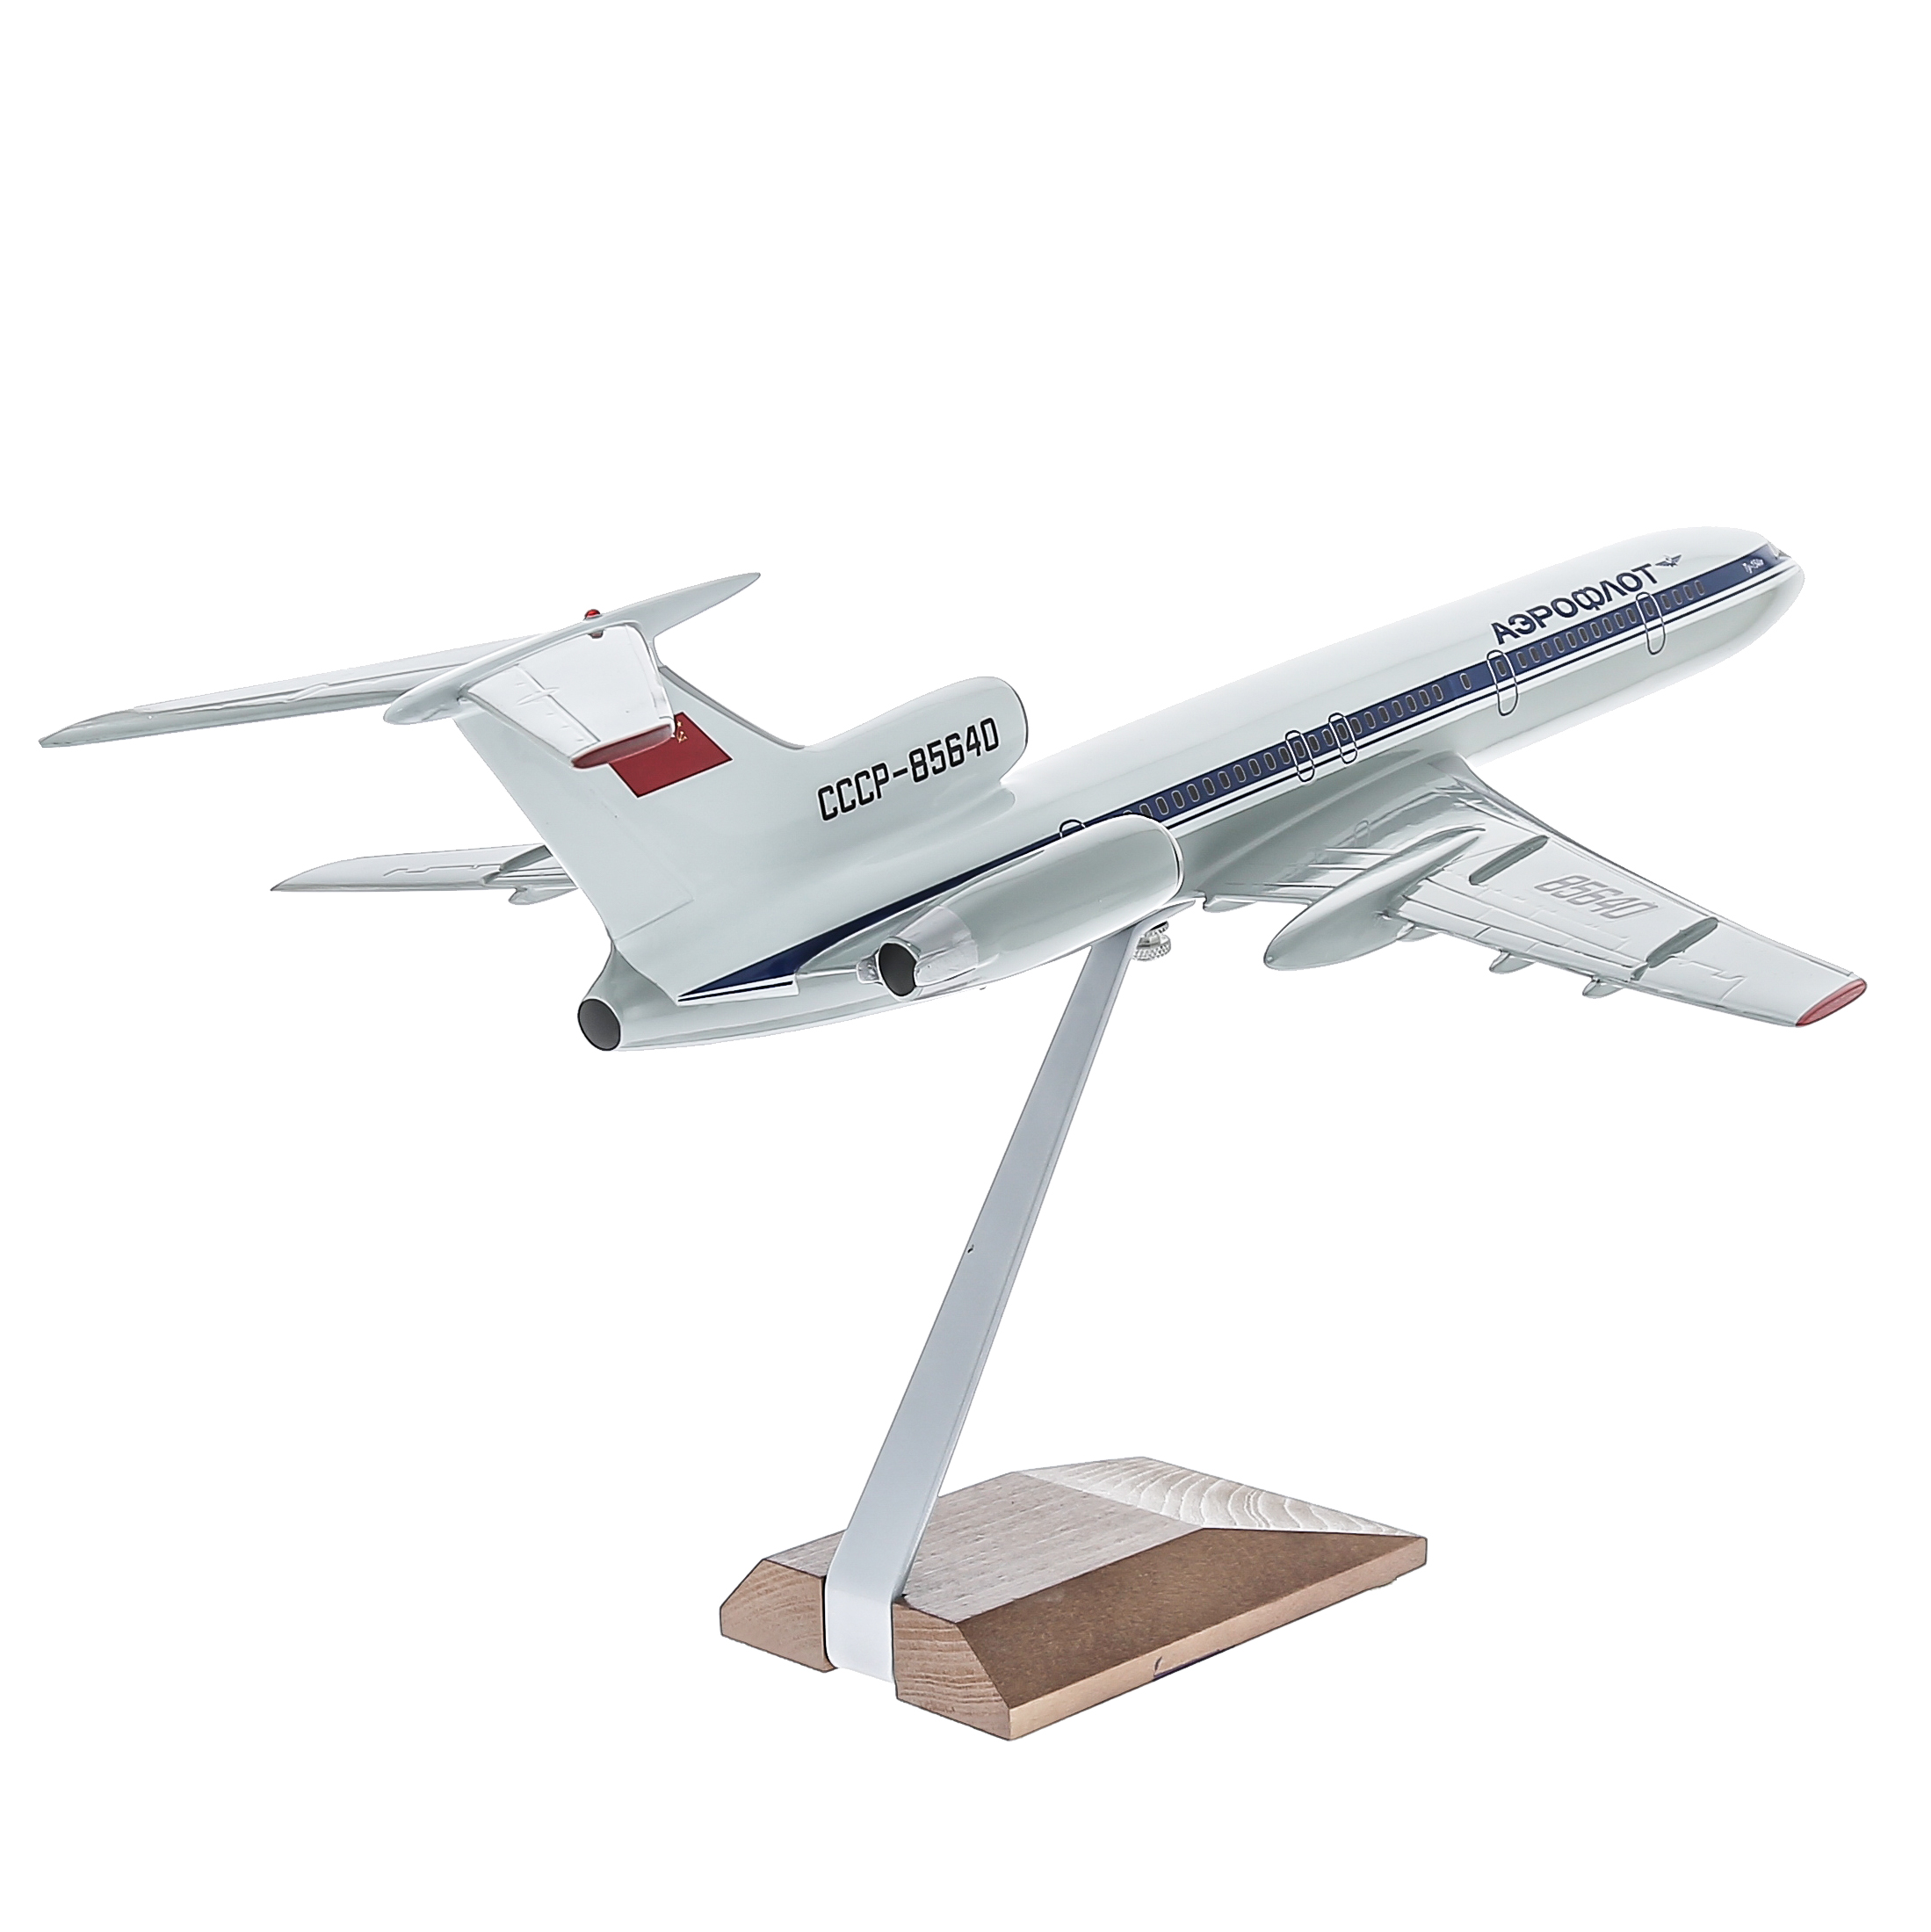 Обзоры готовых моделей пассажирских самолетов